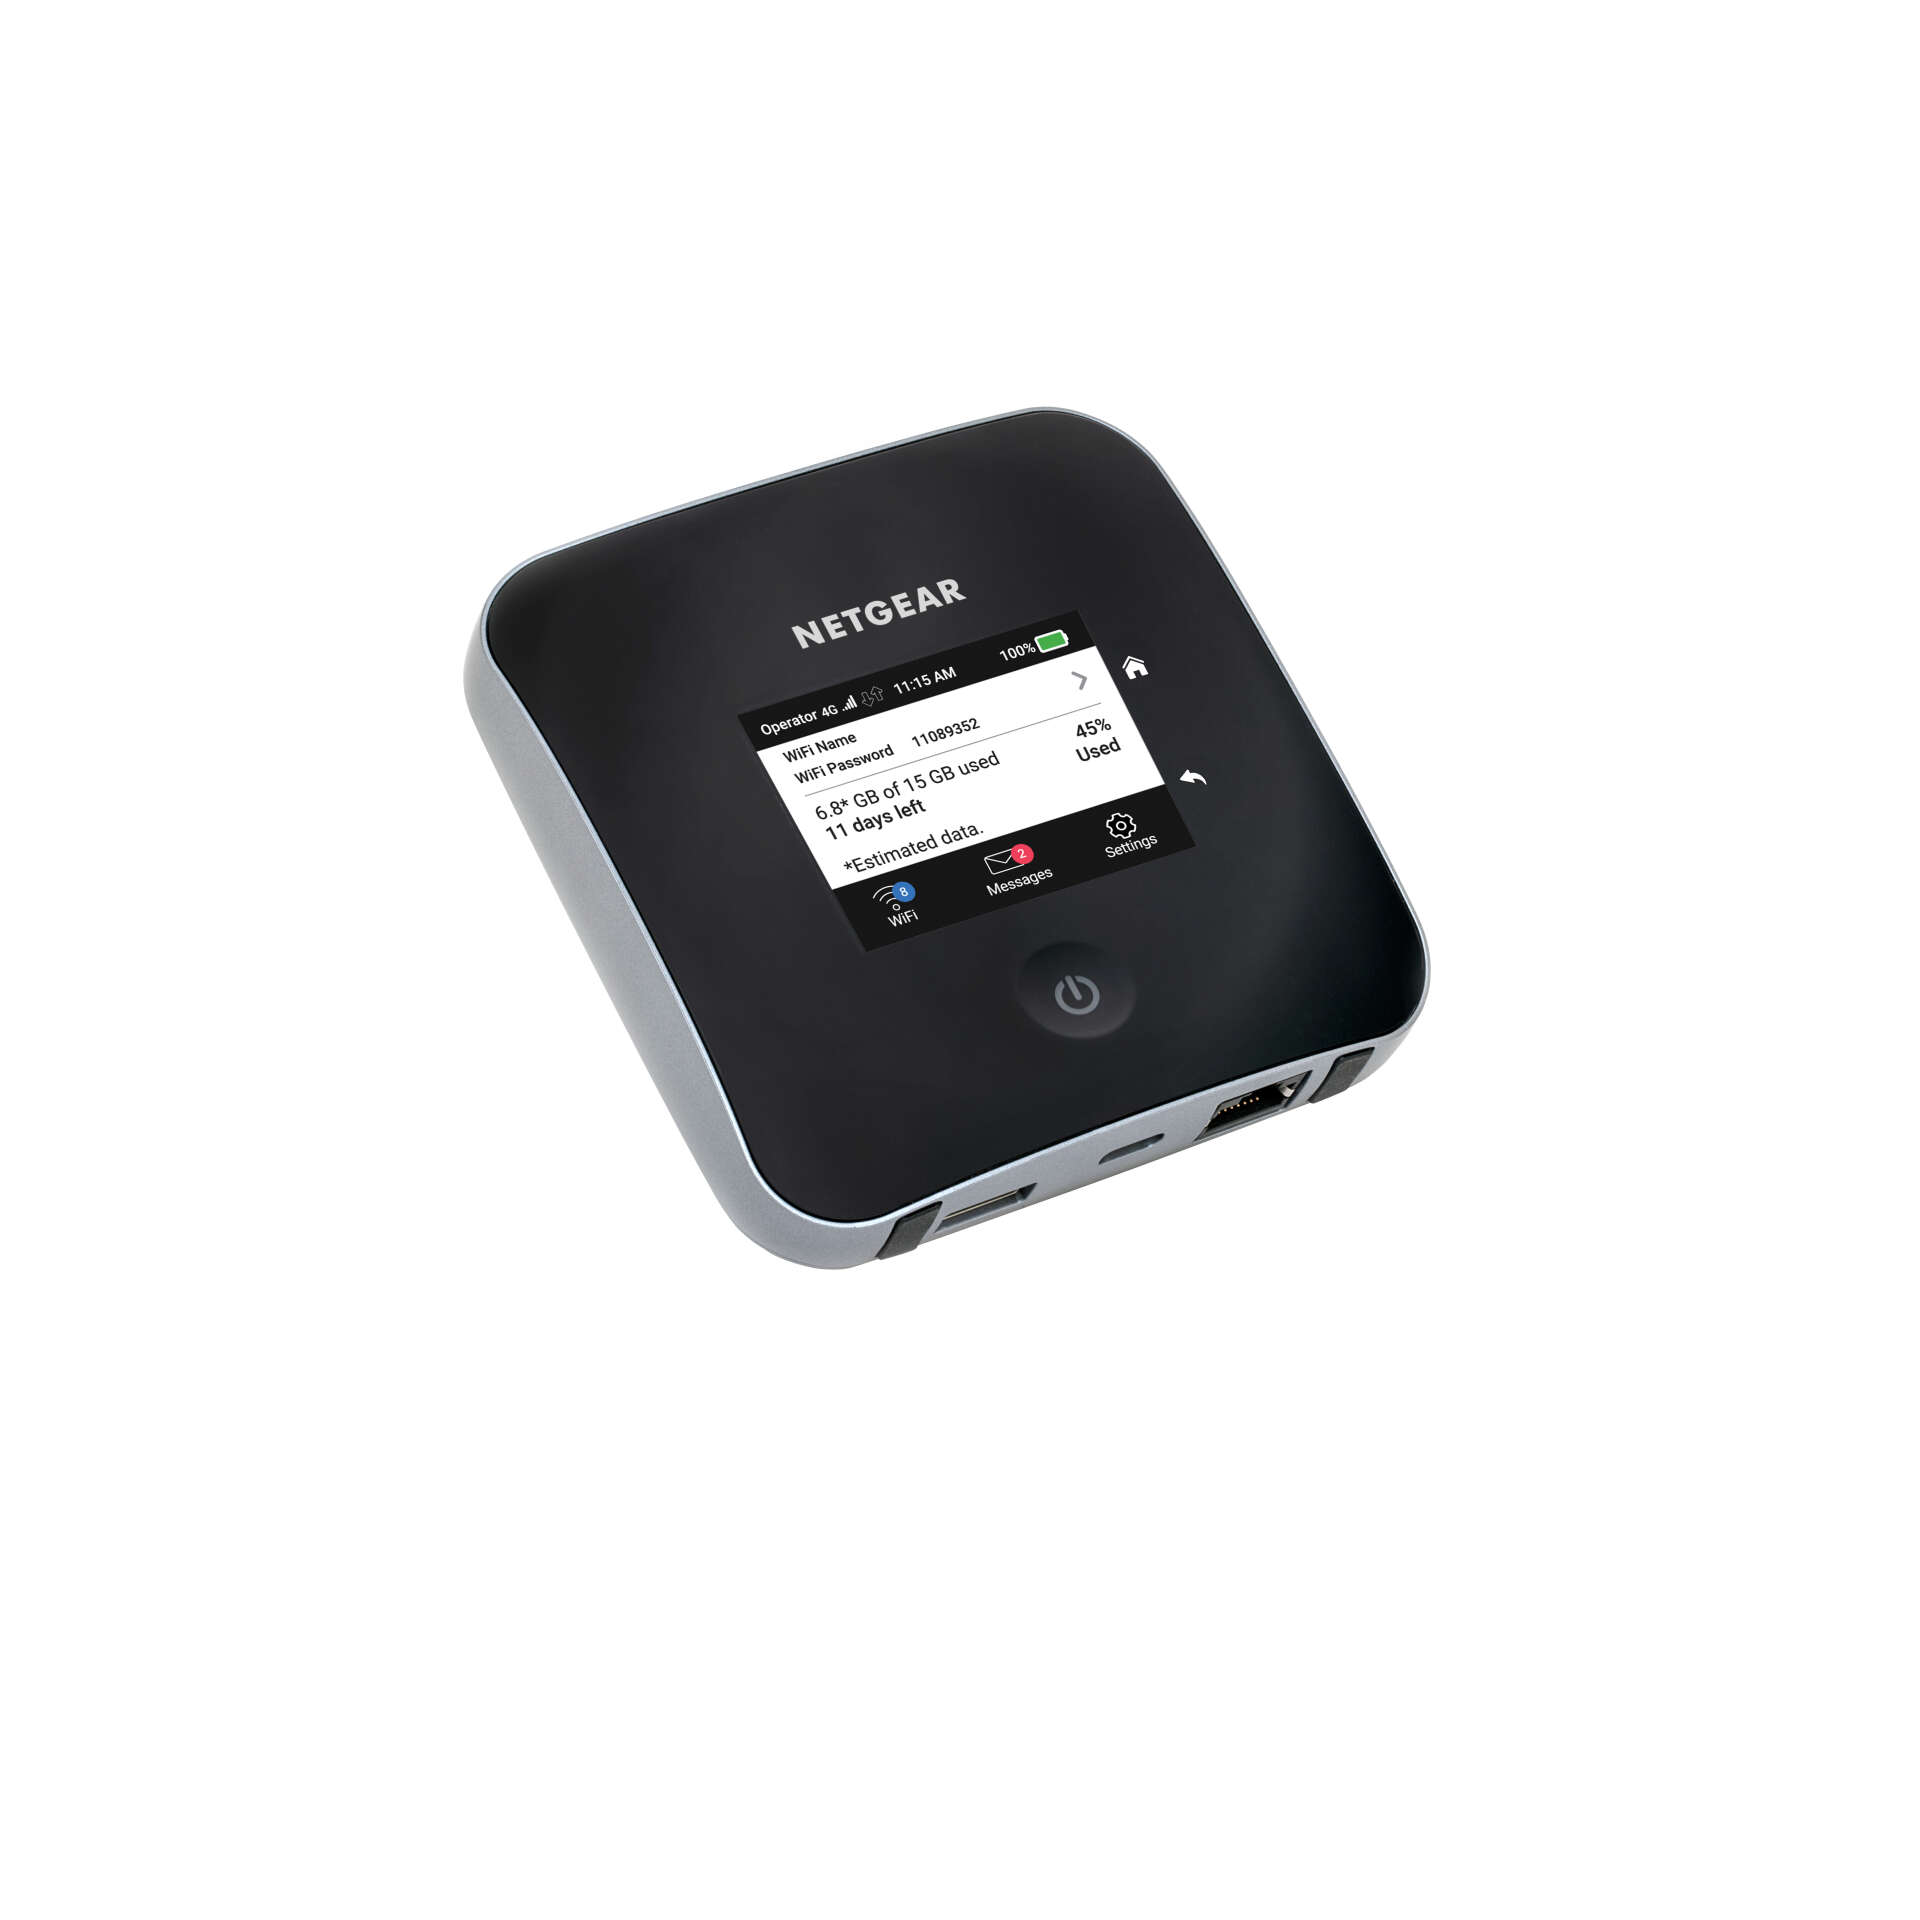 Netgear aircard kétsávos mobilhálózati router - fekete-szürke